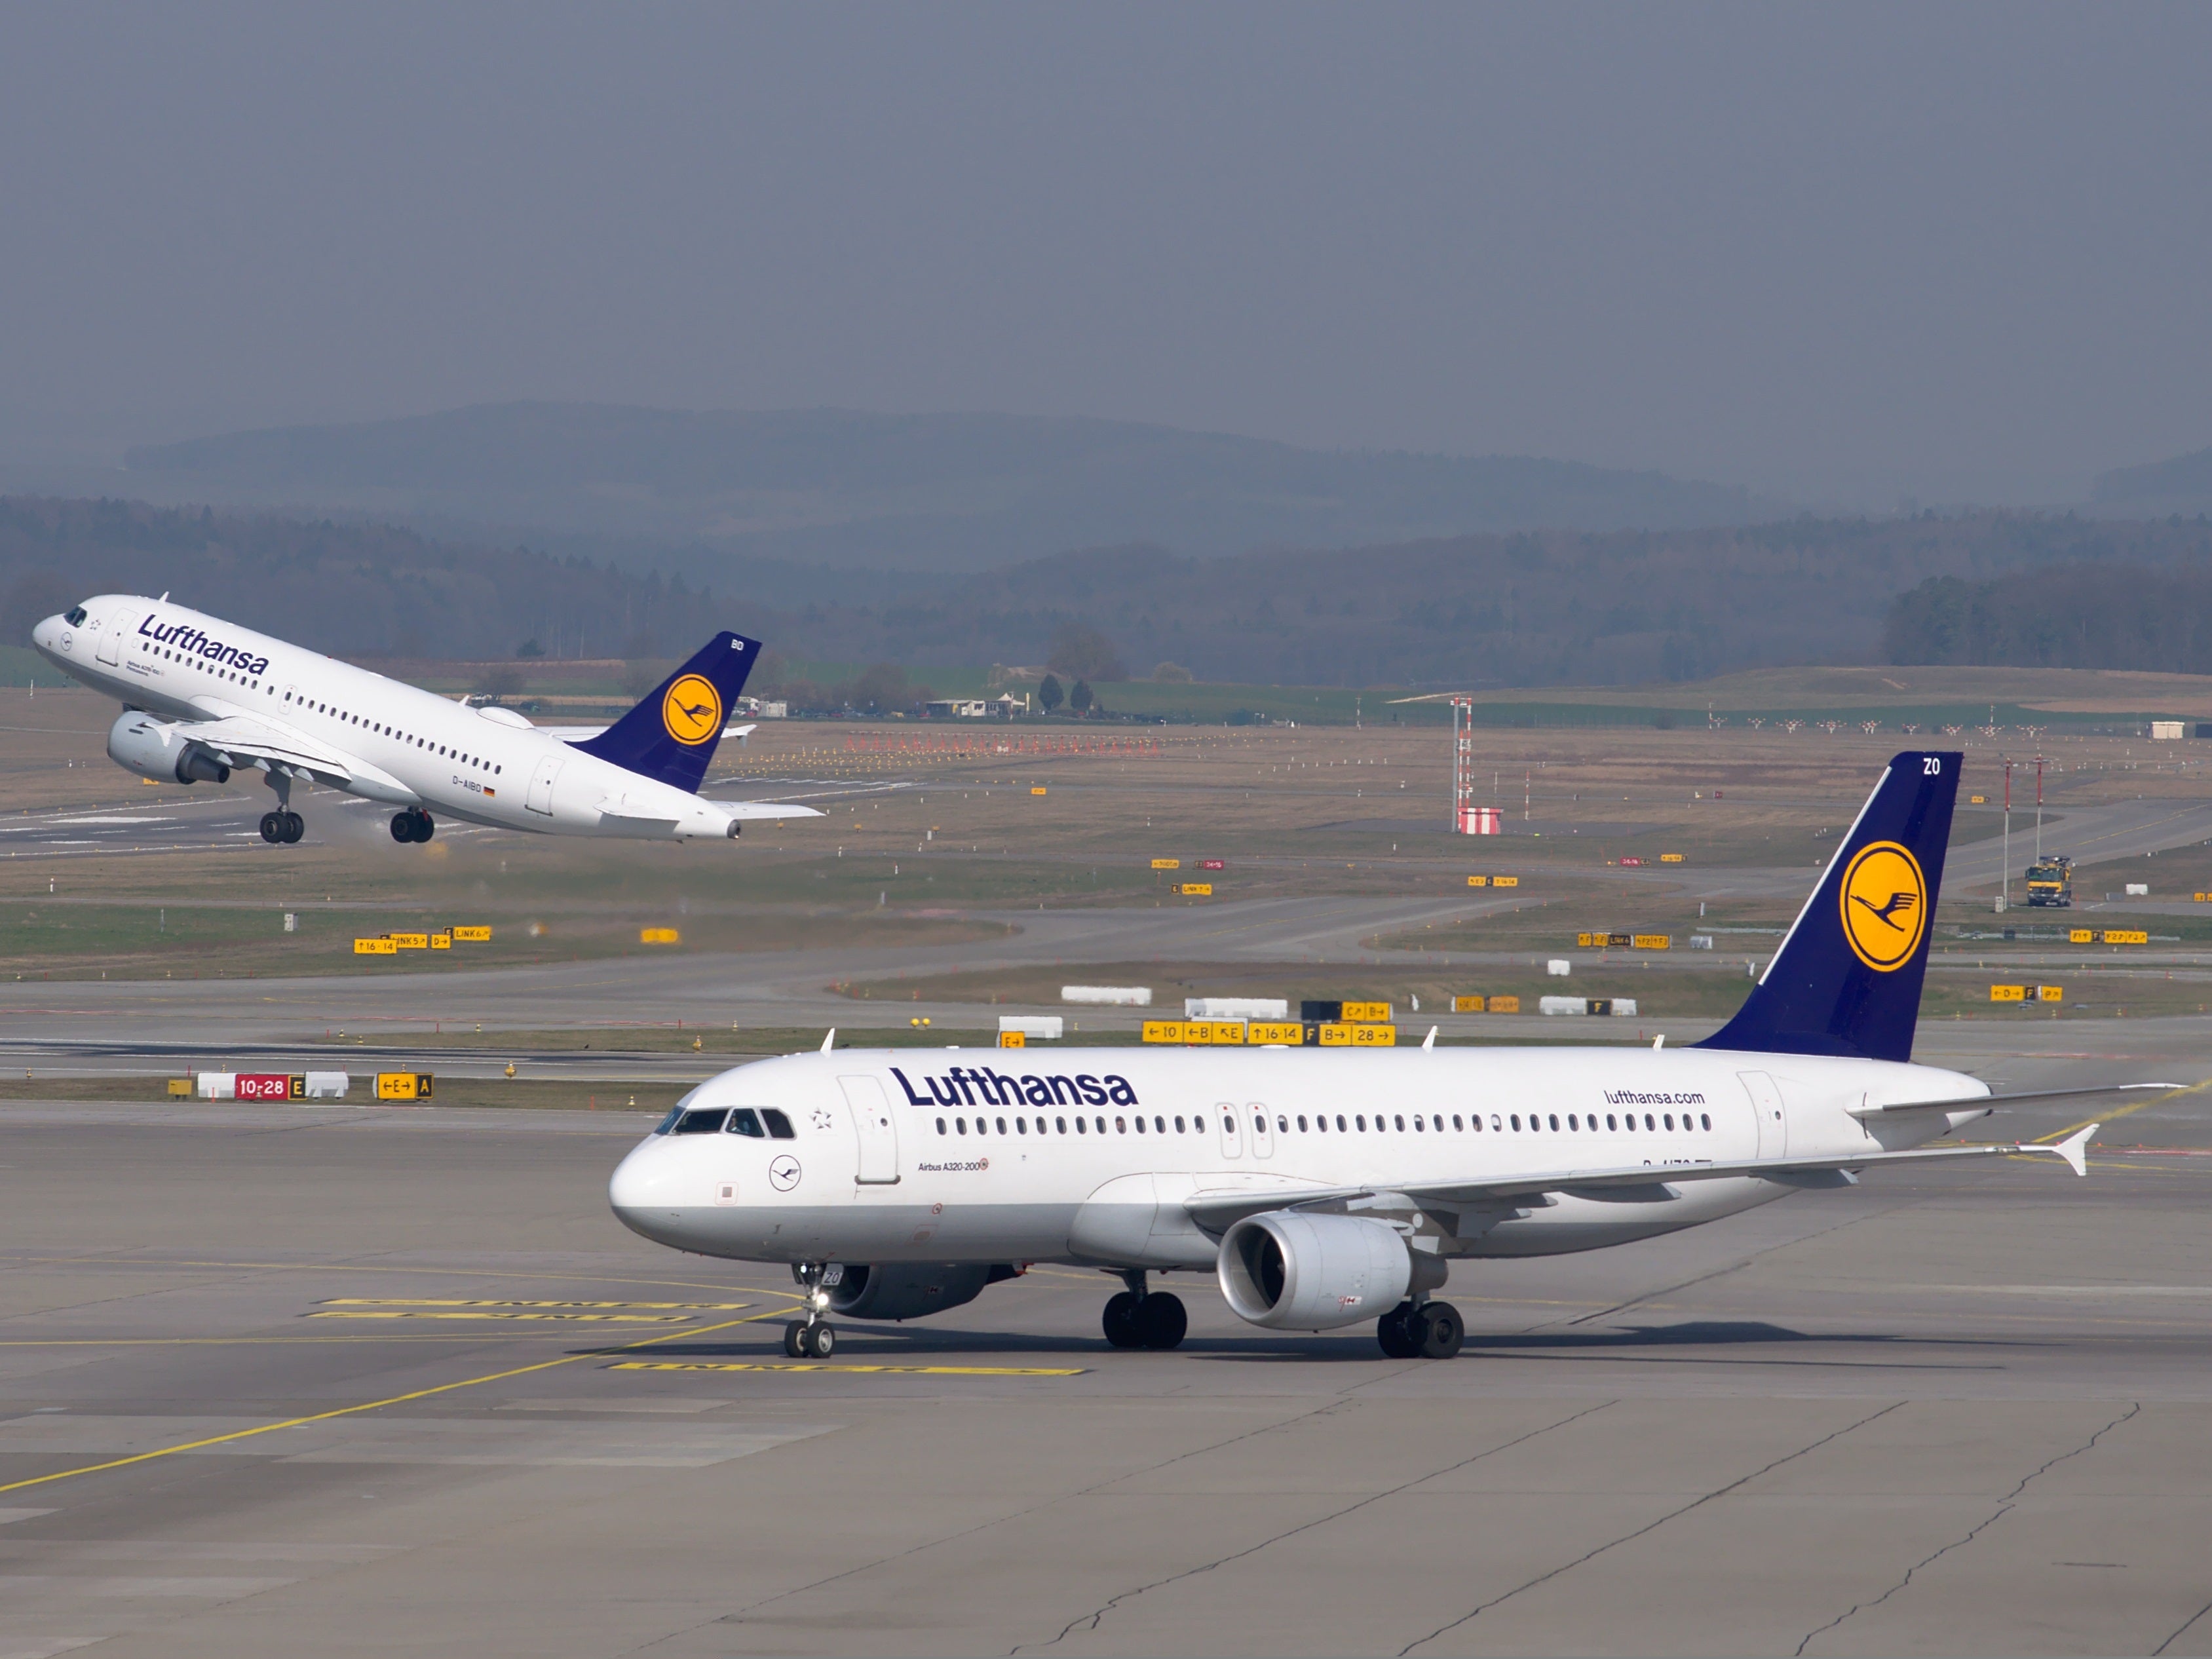 #Lufthansa-Flüge für 2 Euro – Was steckt hinter der Aktion?